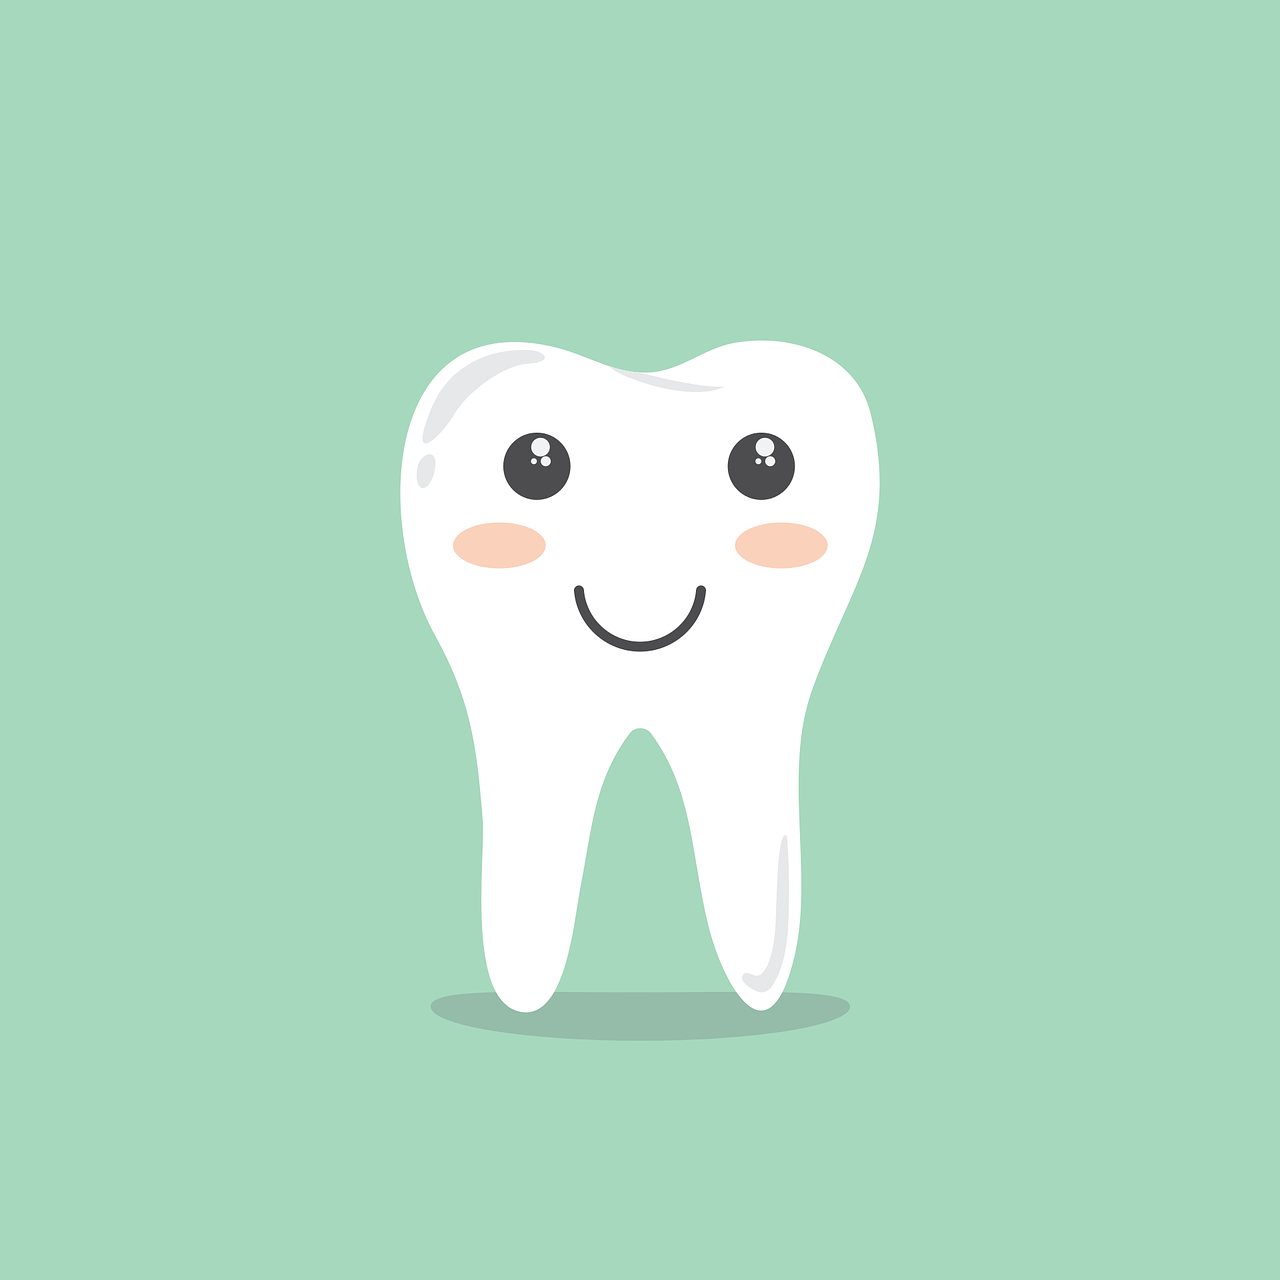 鬱で歯を失いかけた話と歯牙移植と虫歯についての知識